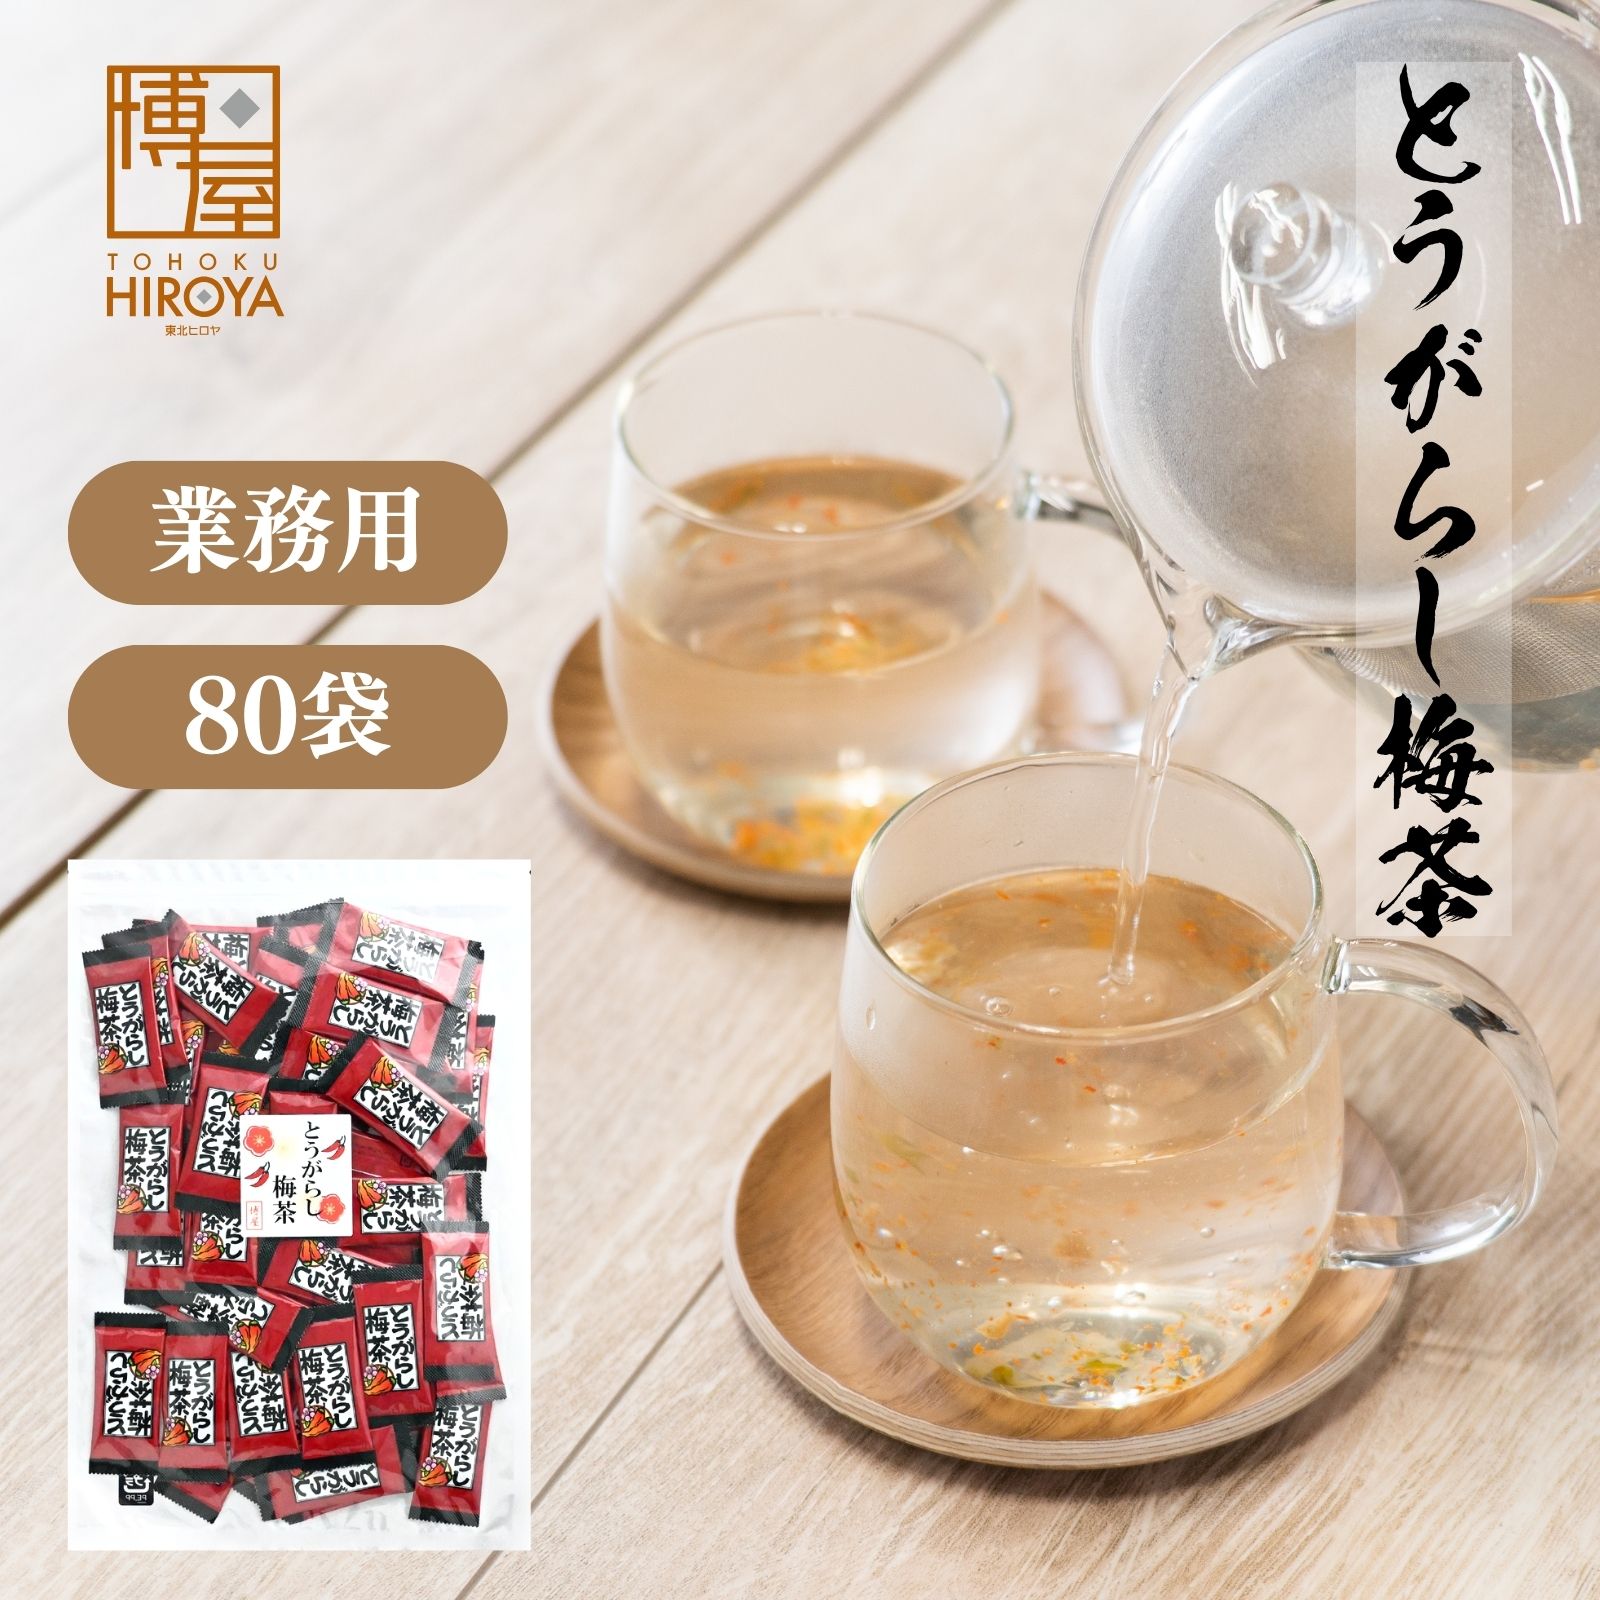 【秋田県のお土産】お茶・紅茶